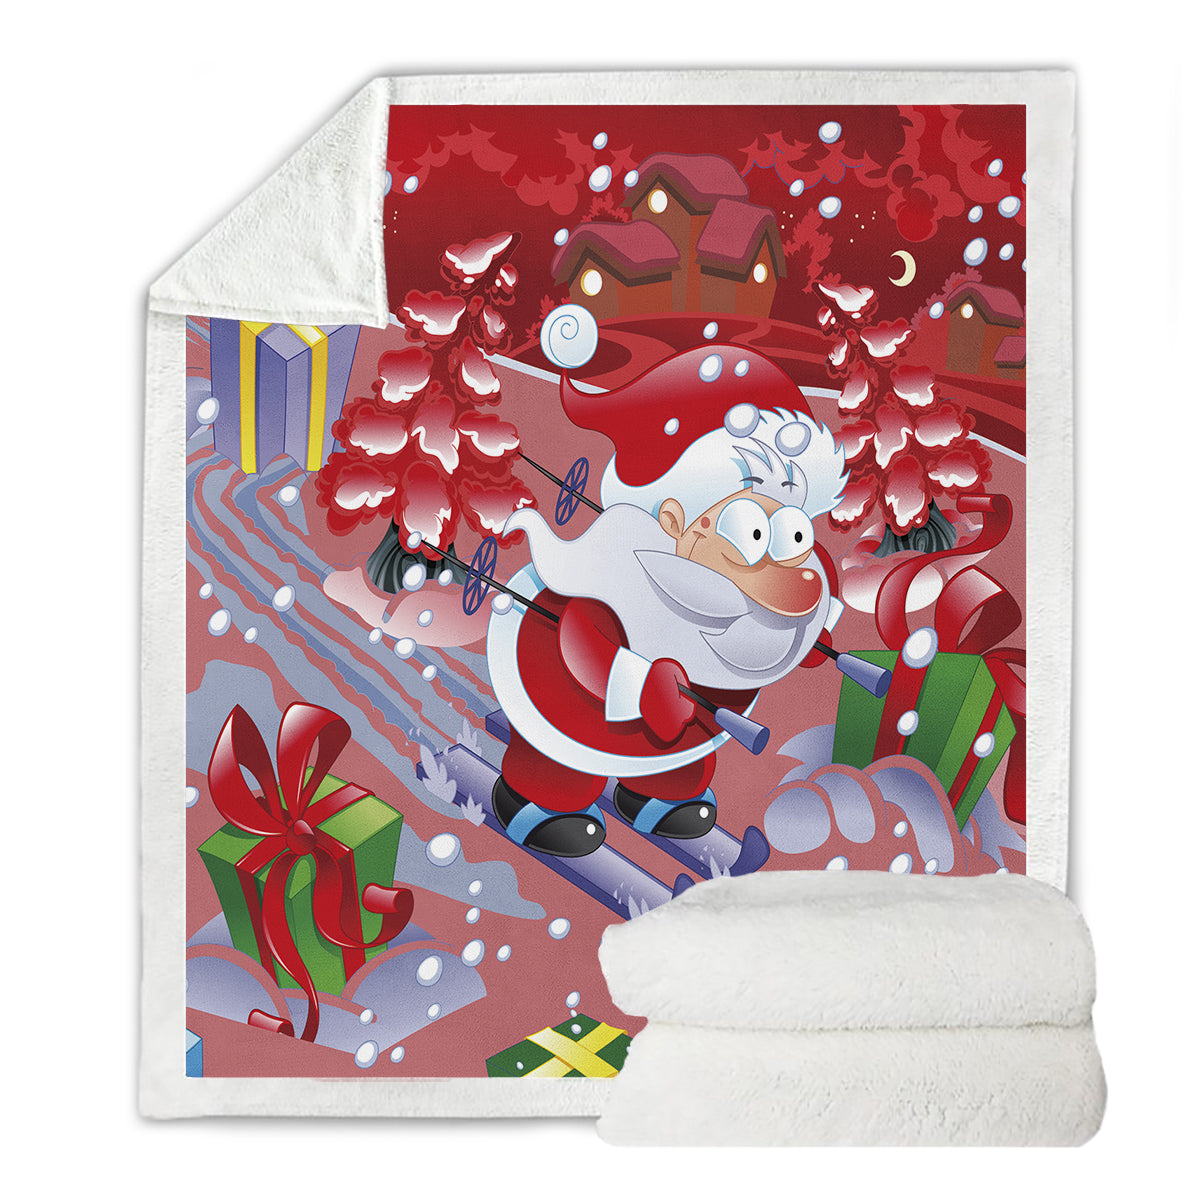 WONGS BEDDING Santa Claus Skiing At Christmas Blanket